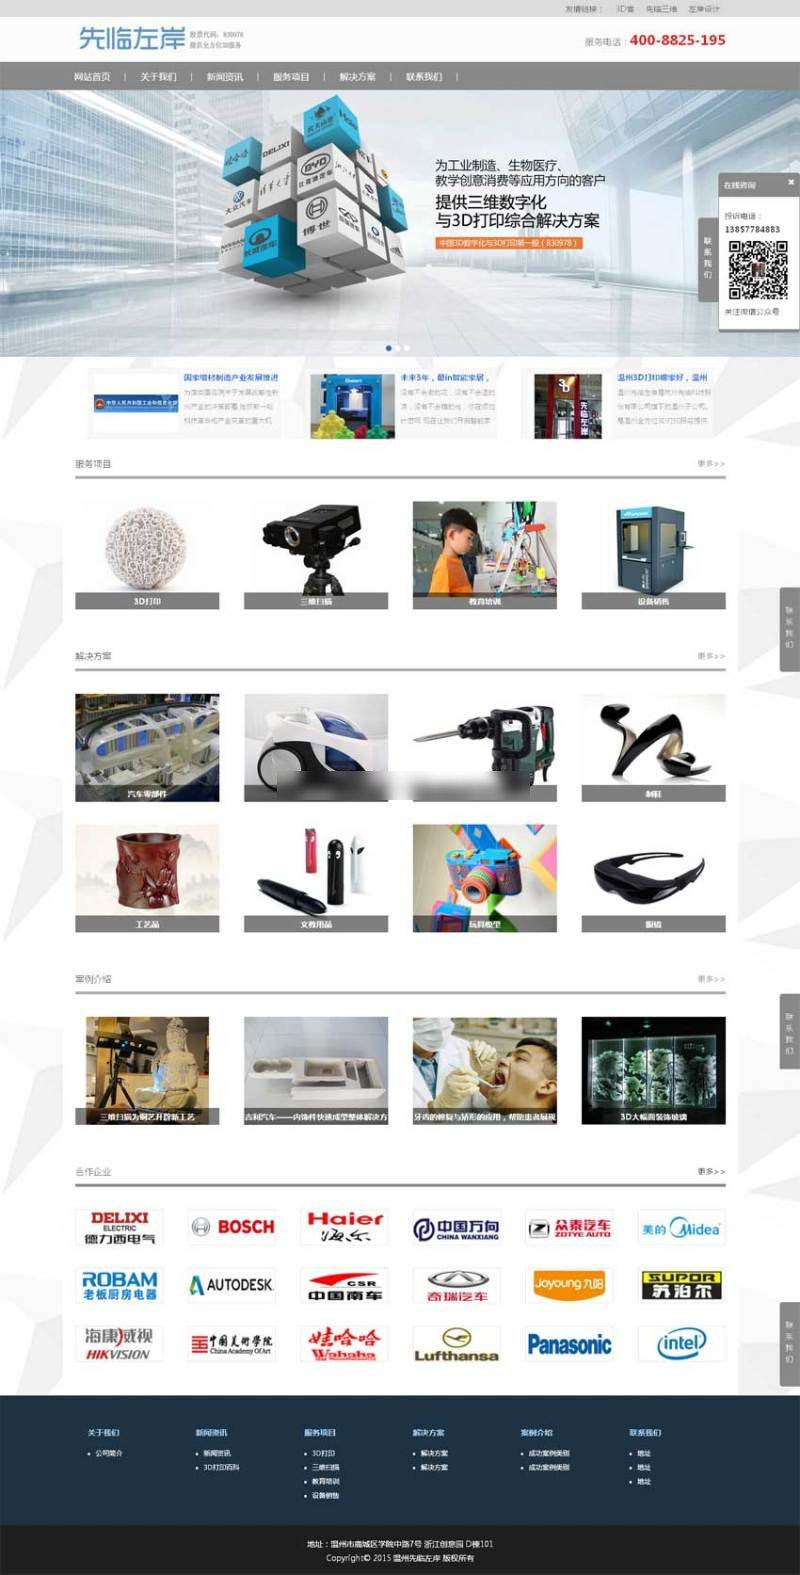 灰色宽屏3D打印设备公司网站模板下载